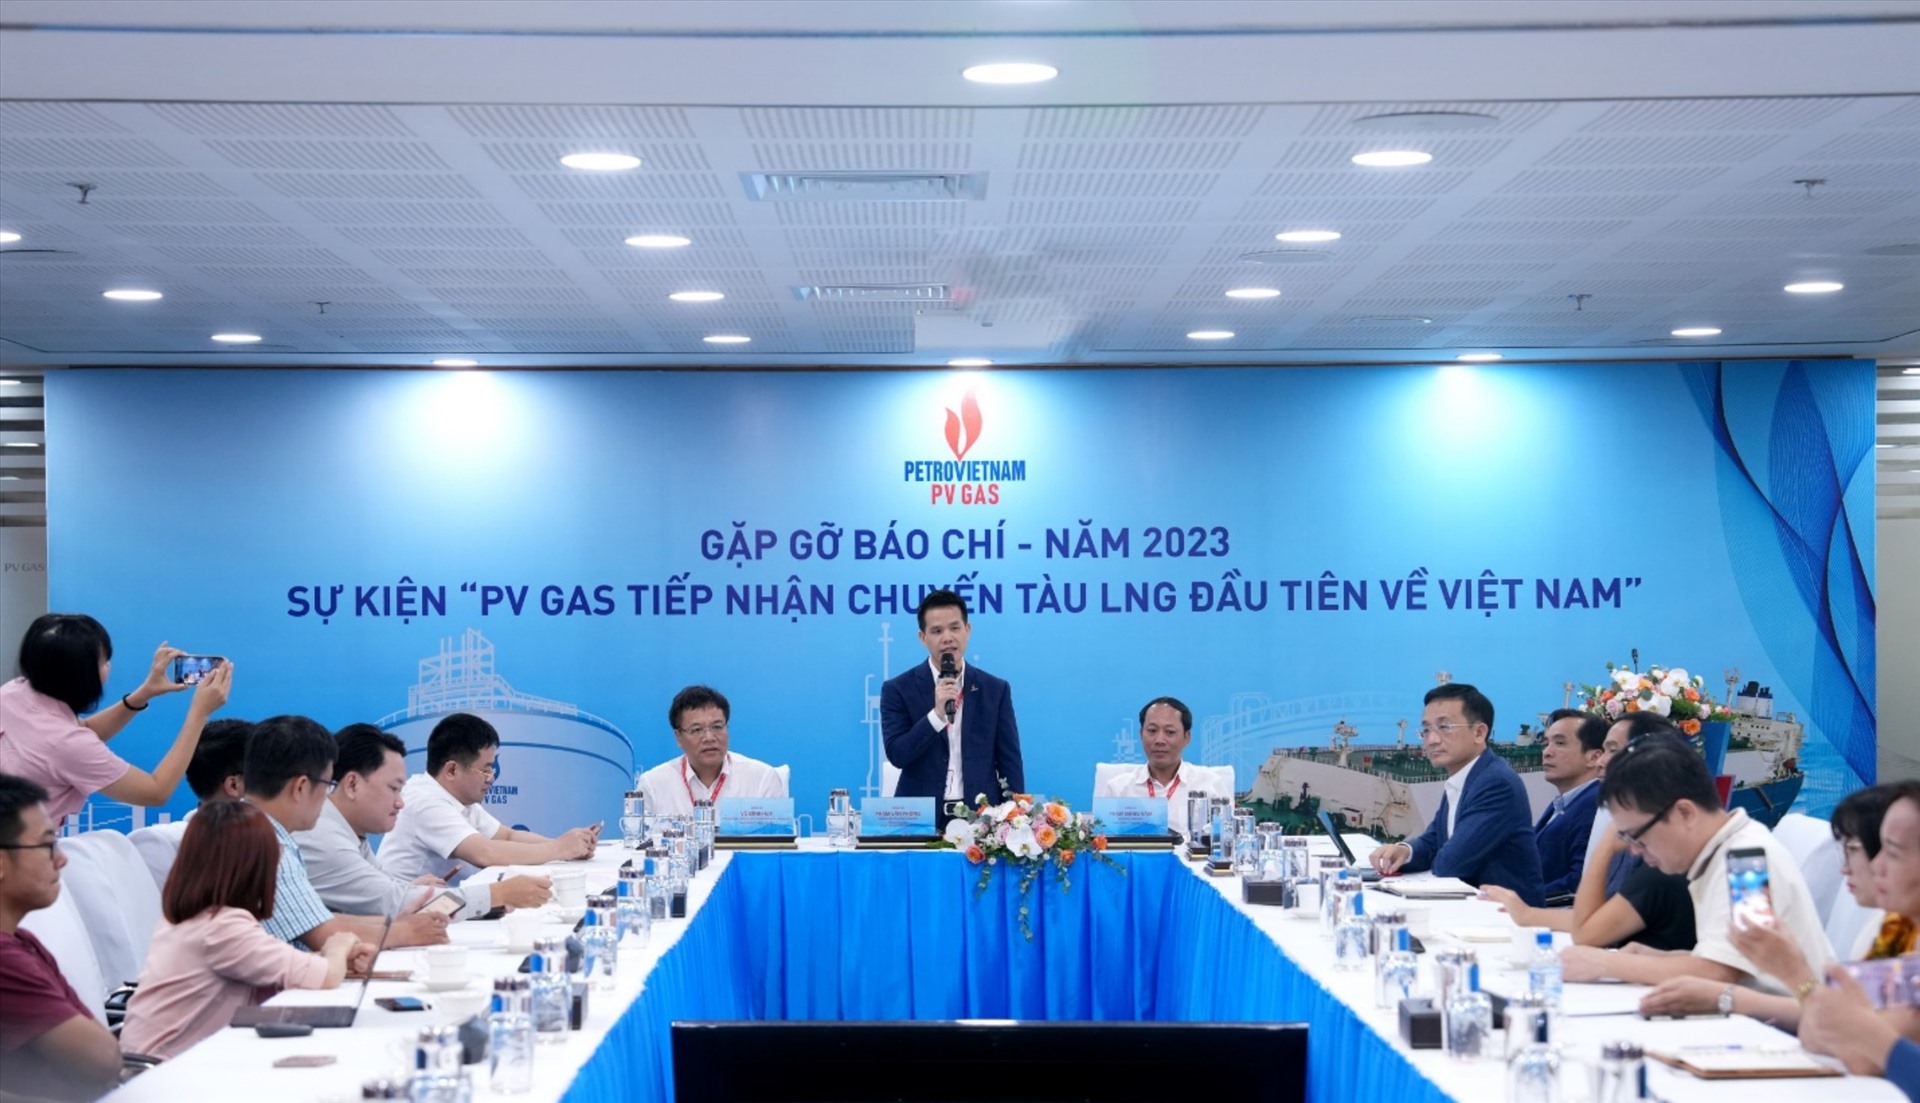 PV GAS tổ chức họp báo, công bố sự kiện “Đón chuyến tàu LNG đầu tiên đến Việt Nam”. Ảnh: PV GAS 